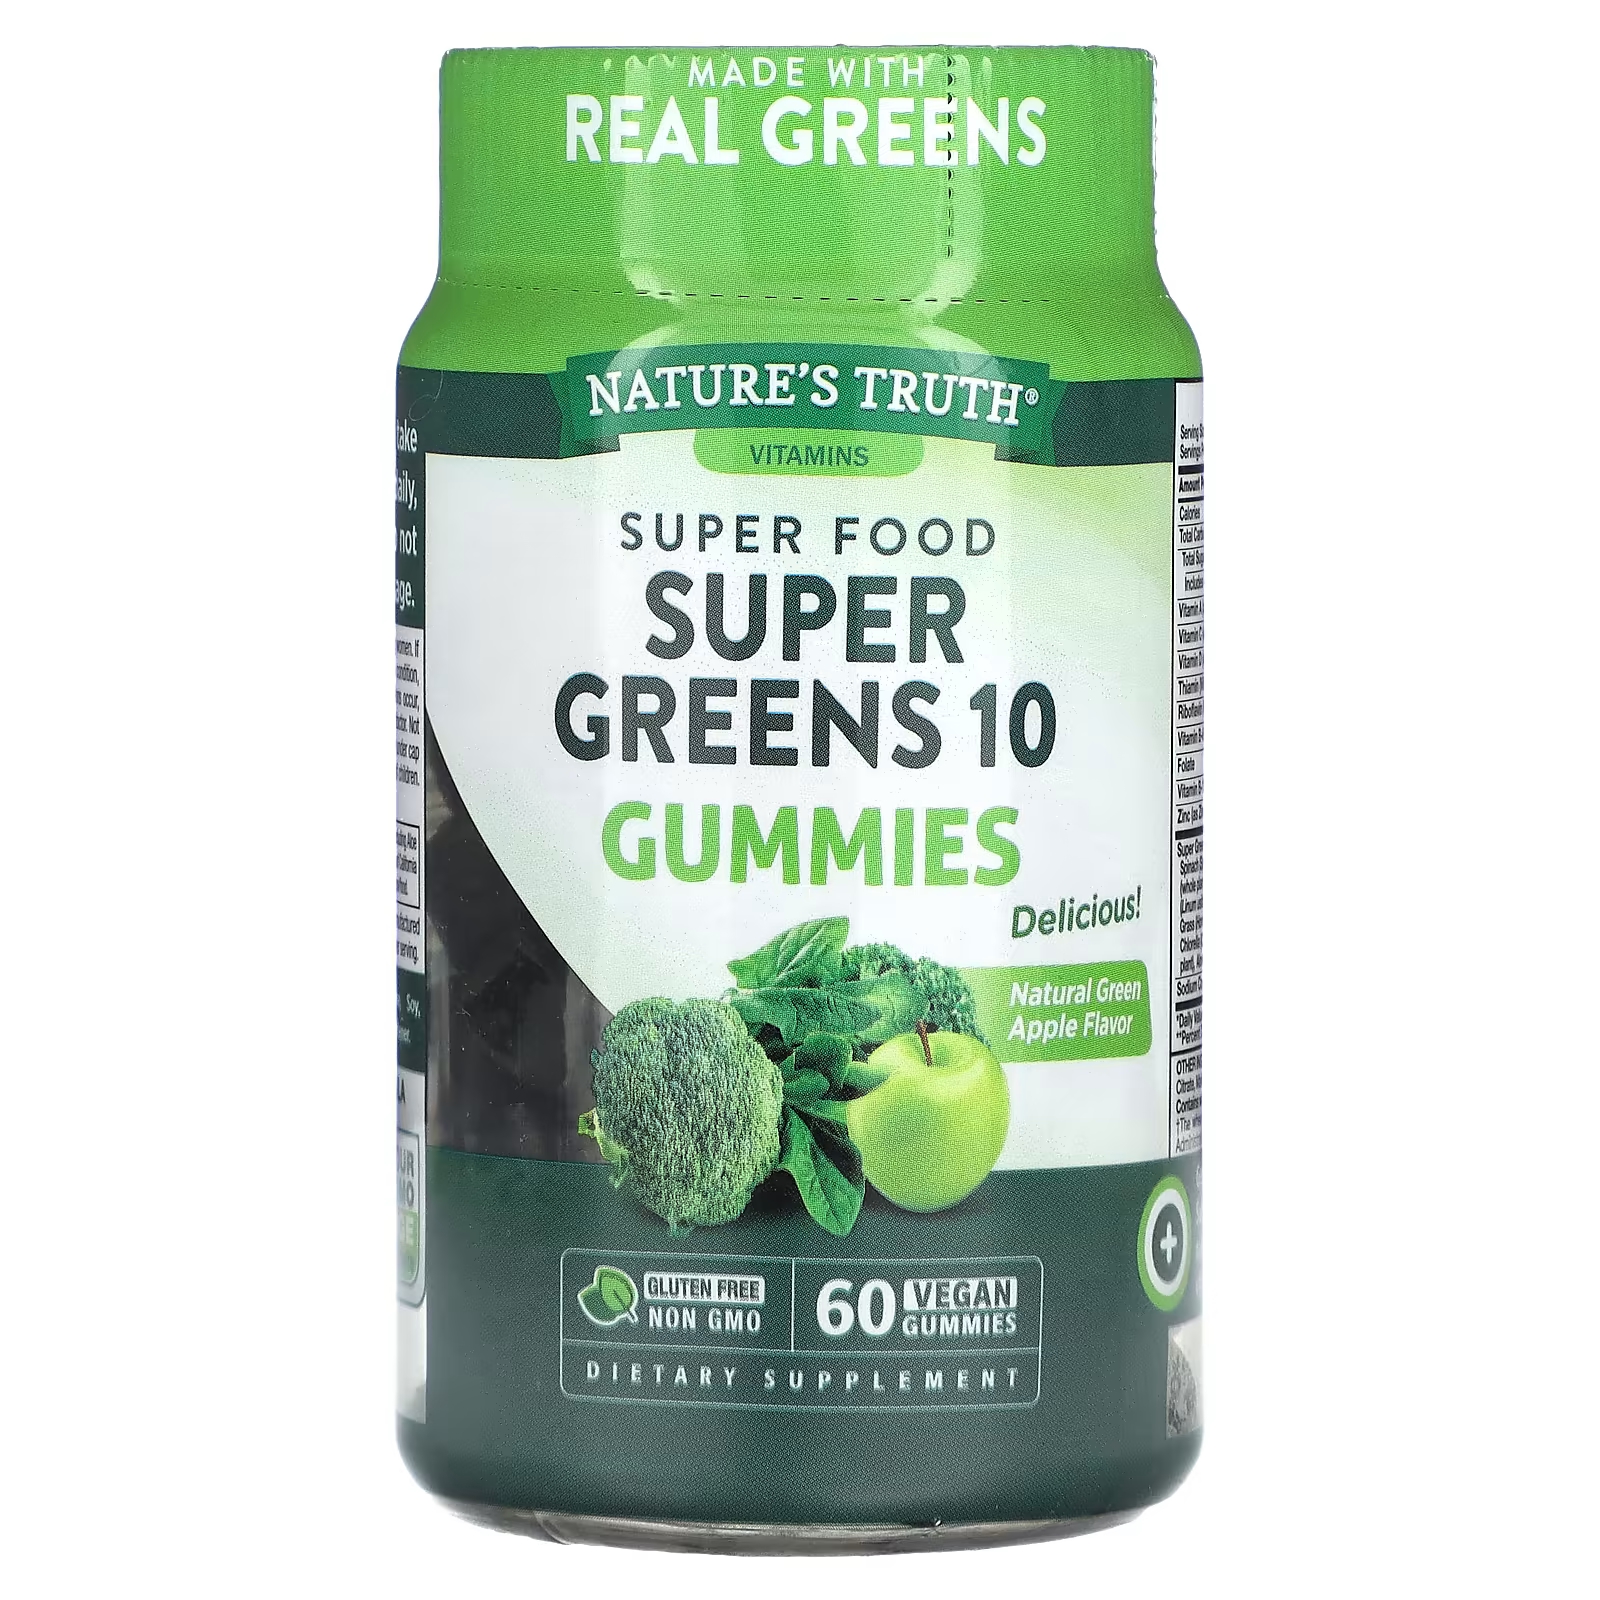 Пищевая добавка Nature's Truth Super Food Super Greens 10, натуральное зеленое яблоко, 60 веганских жевательных конфет